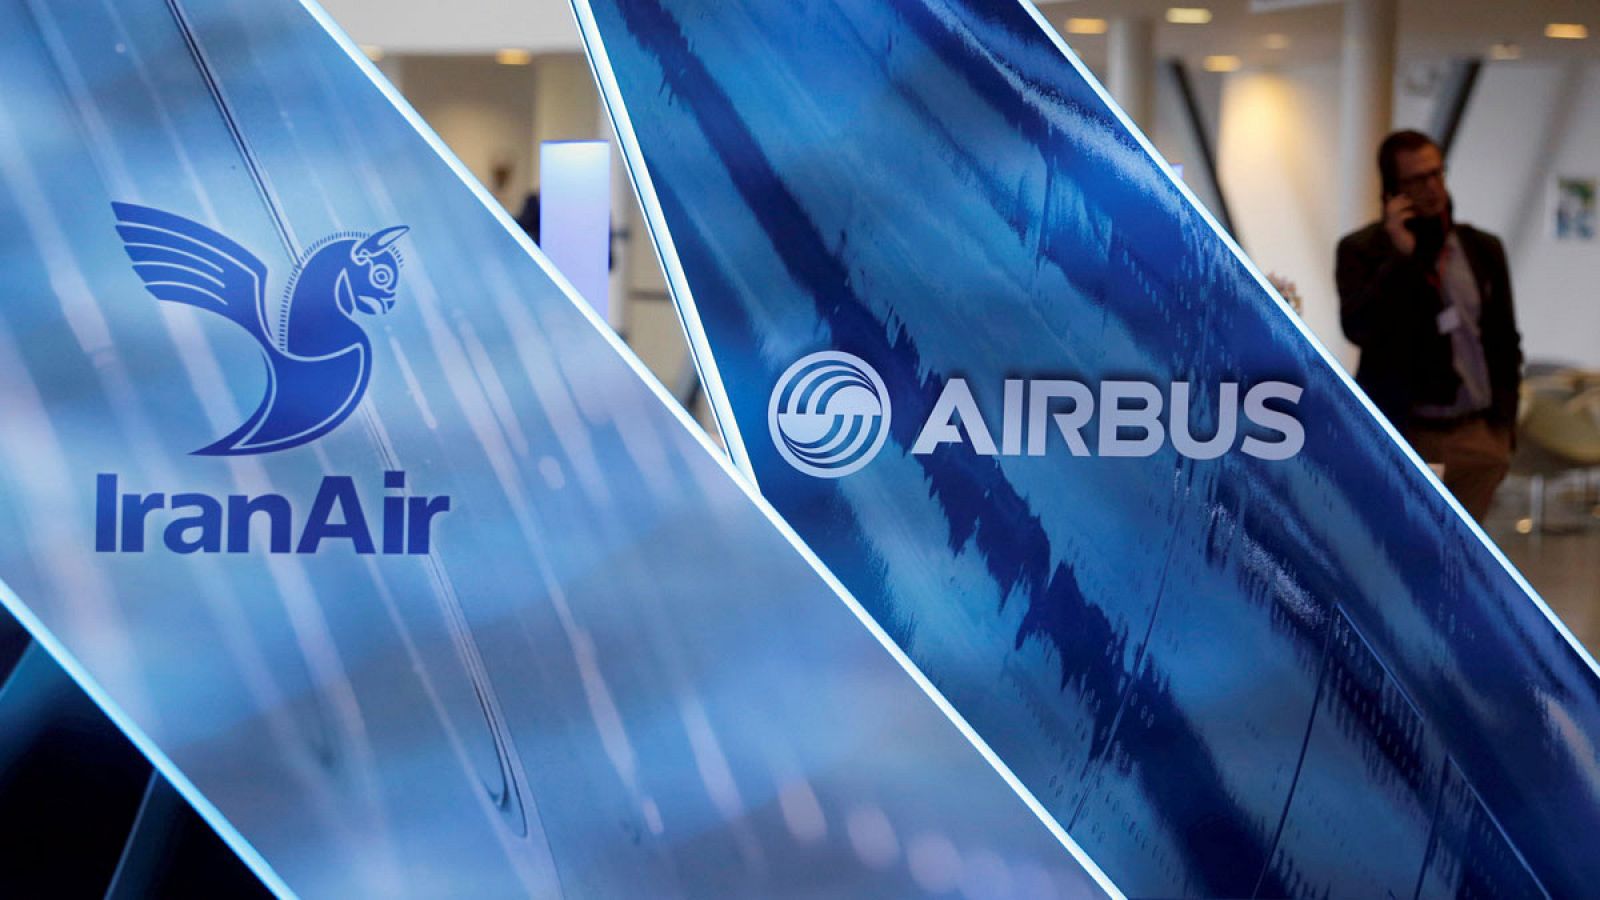 Los logos del consorcio europeo aeronáutico Airbus y de la aerolínea iraní IranAir sobre dos maquetas de aviones